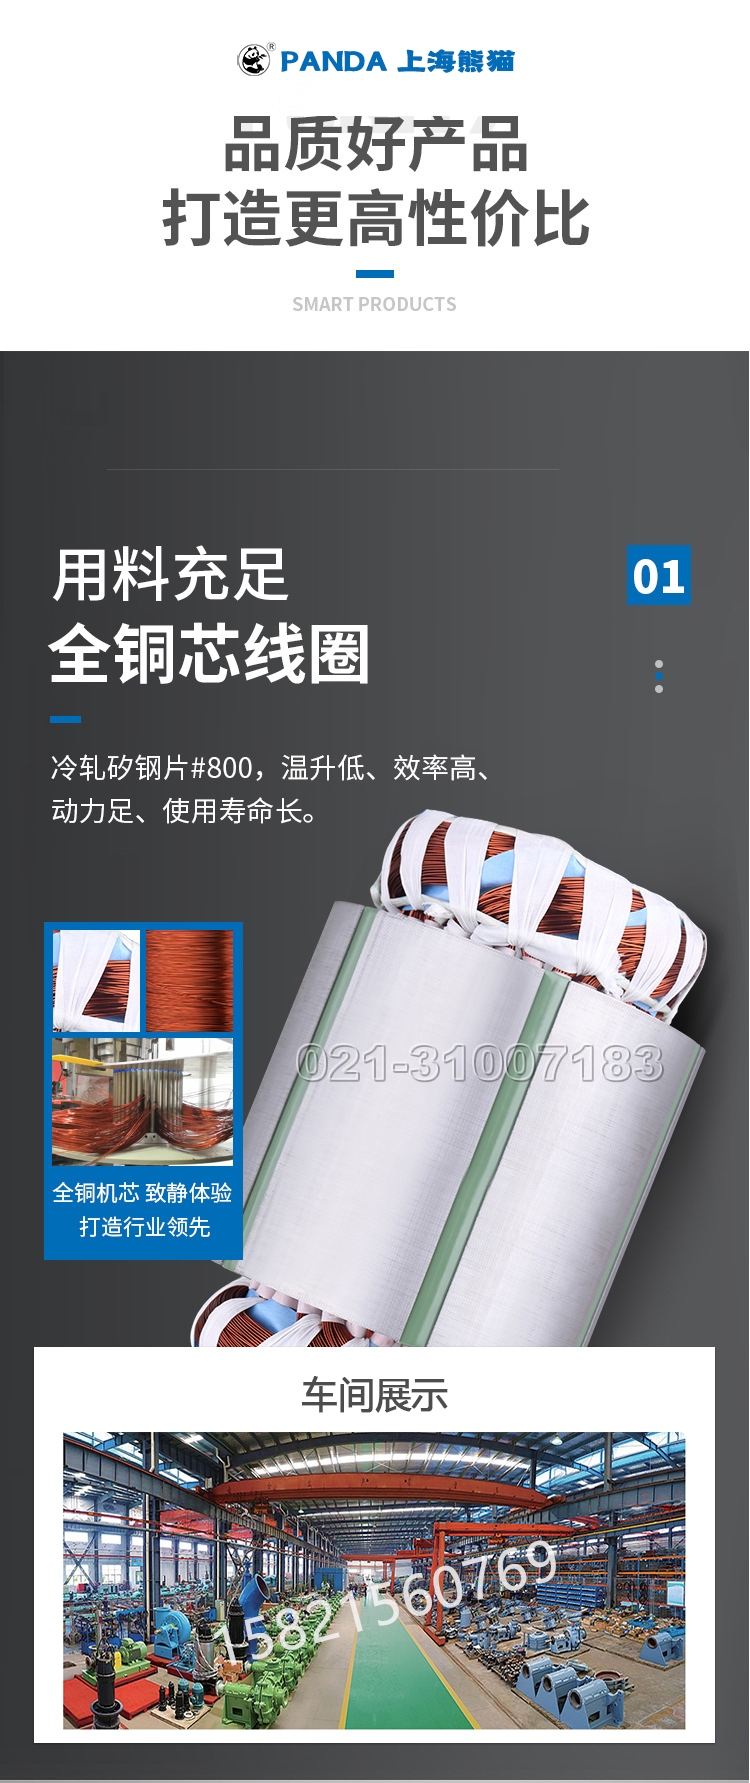 上海熊猫水泵不锈钢搅匀切割潜水泵排污泵潜污泵XWQ污水泵熊猫泵